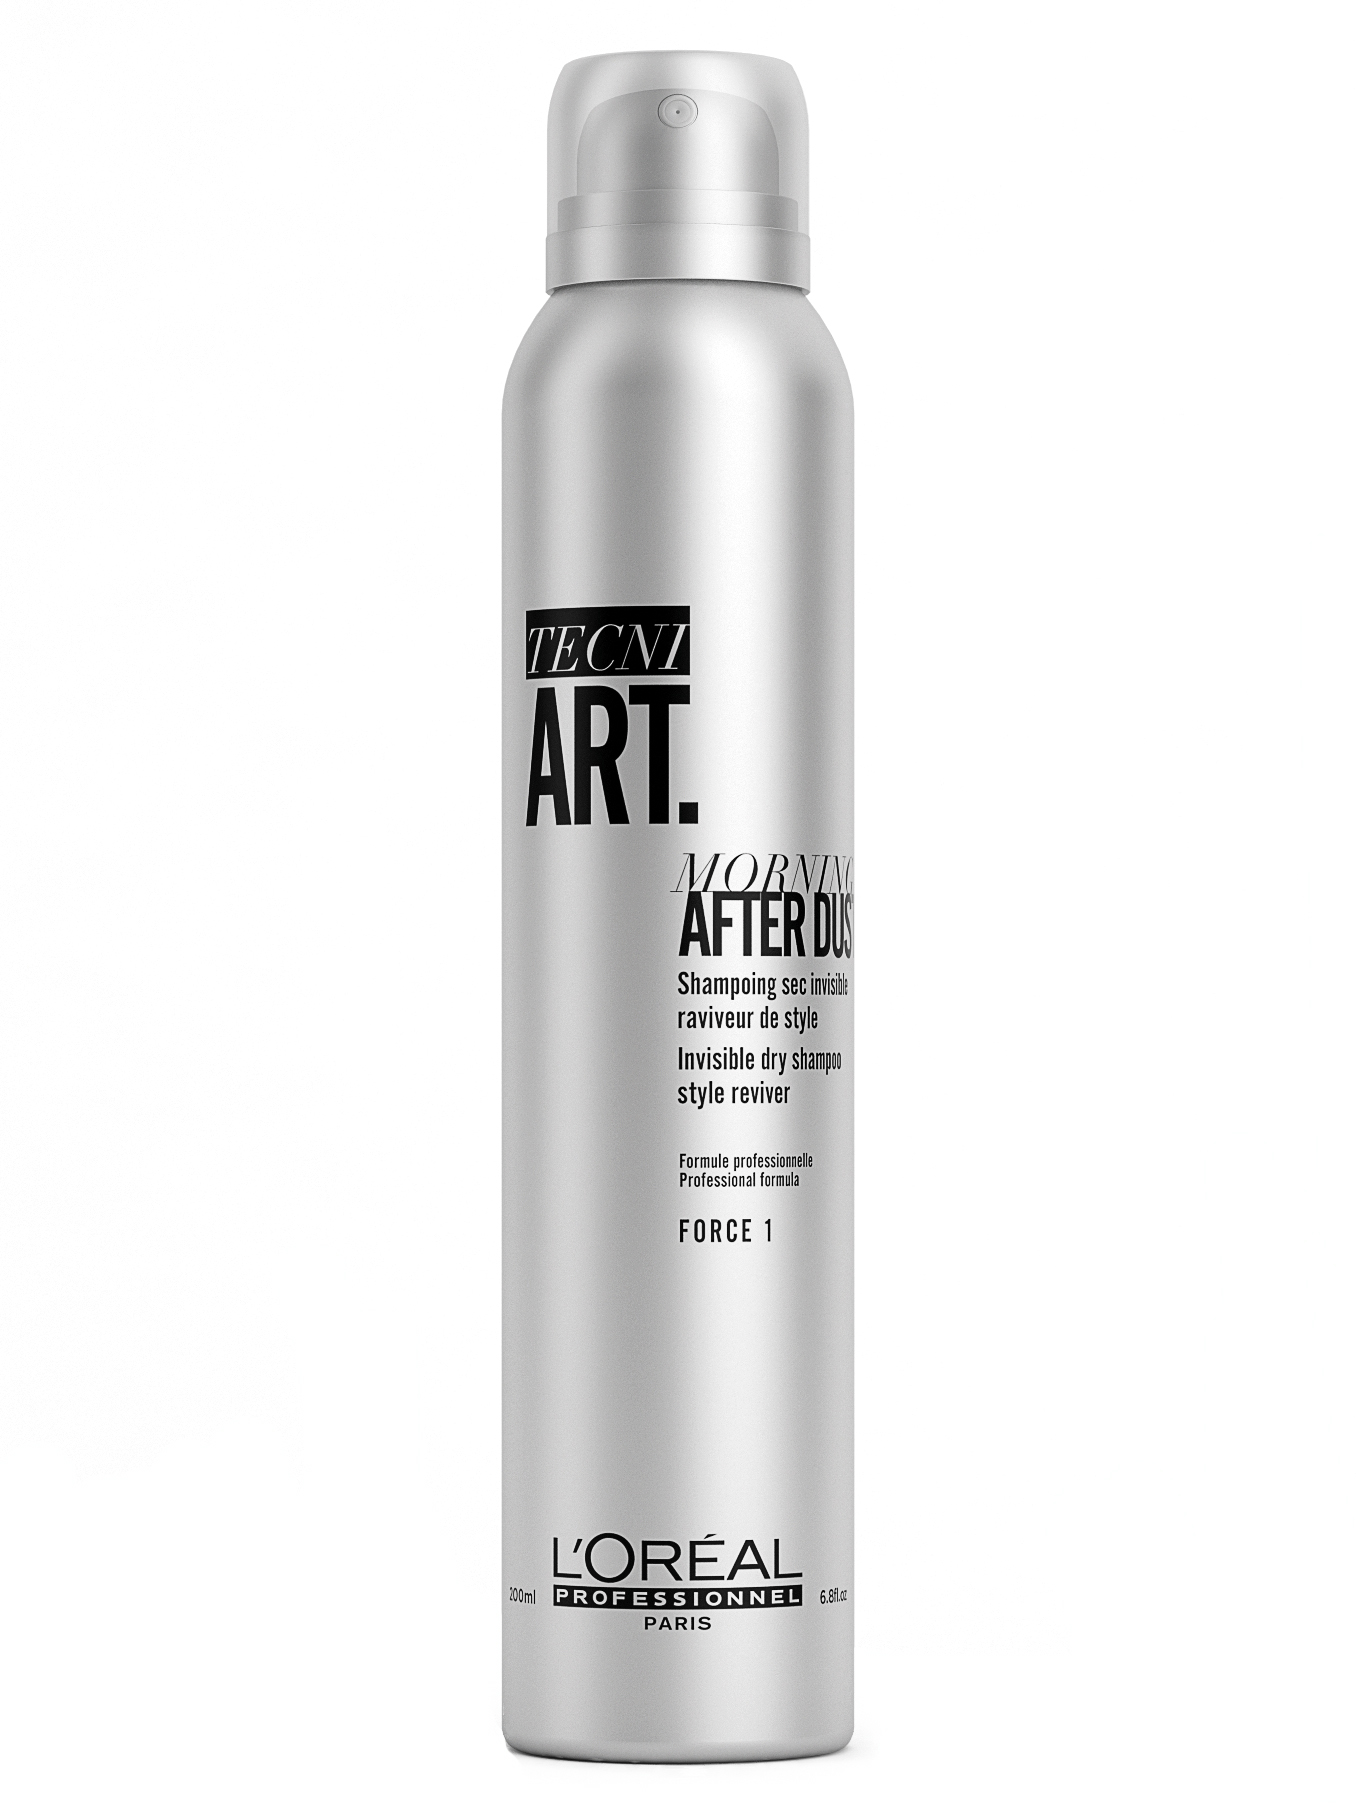 Suchý šampon Loréal Tecni. Art Morning After Dust - 200 ml - L’Oréal Professionnel + DÁREK ZDARMA